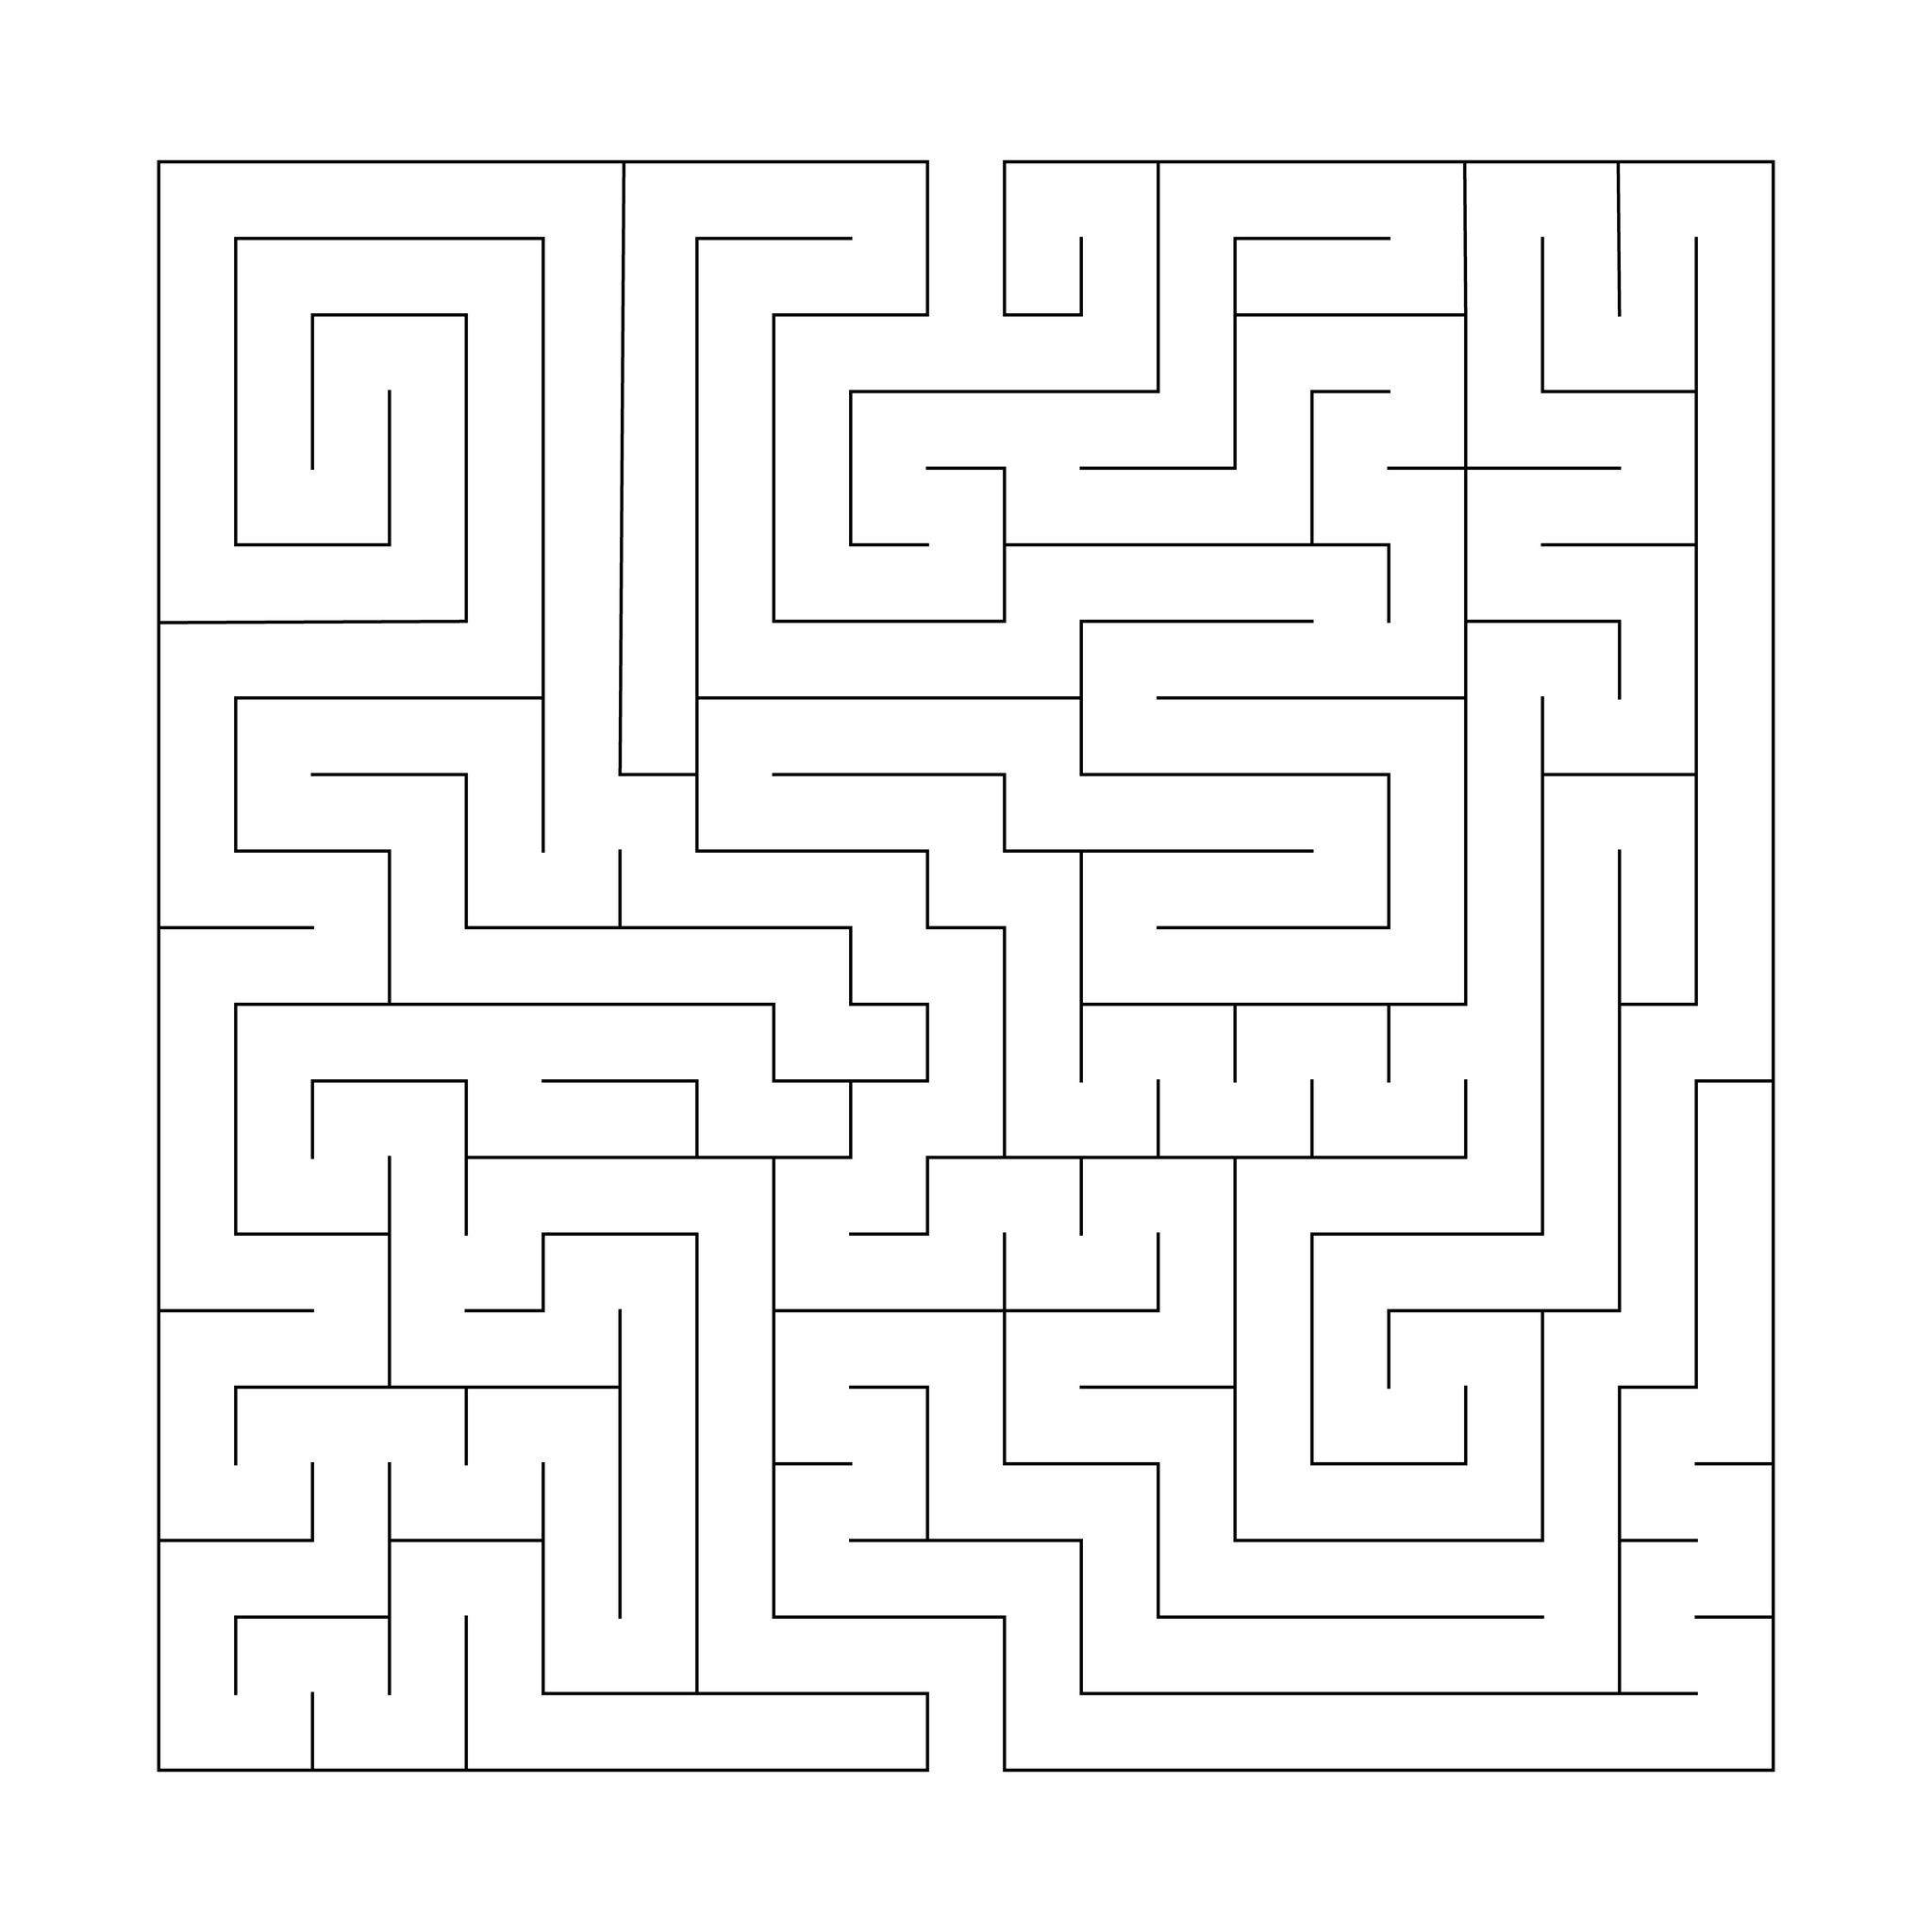 Guide You Through The Maze